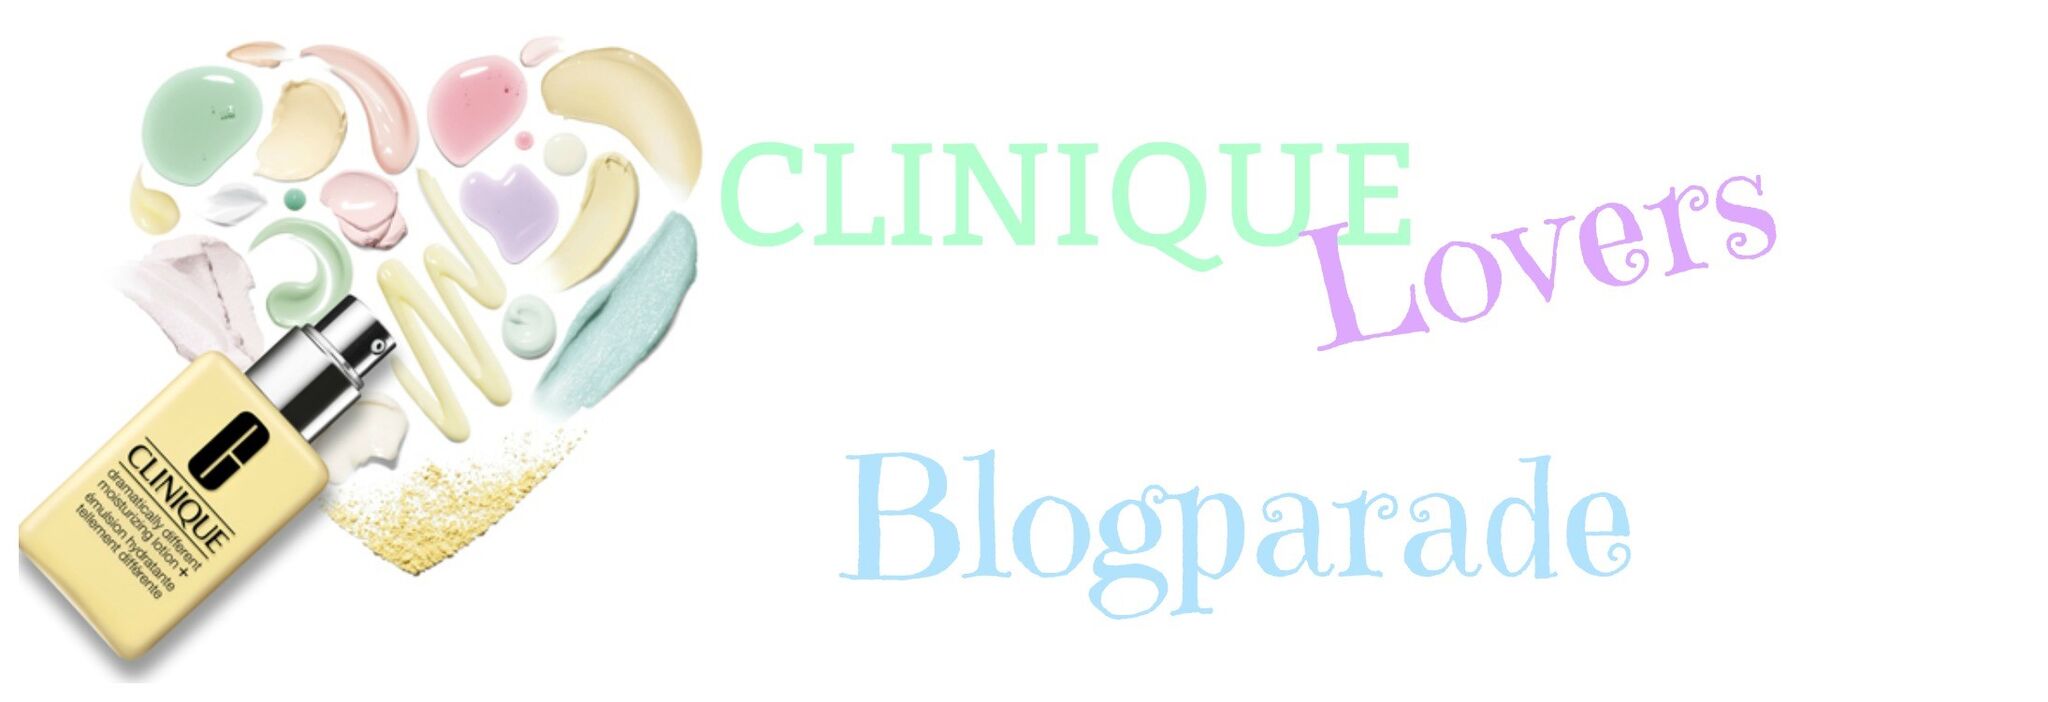 CLINIQUE Brandlove Blogparade - Gewinnspiel & Nude Look - Highendlove